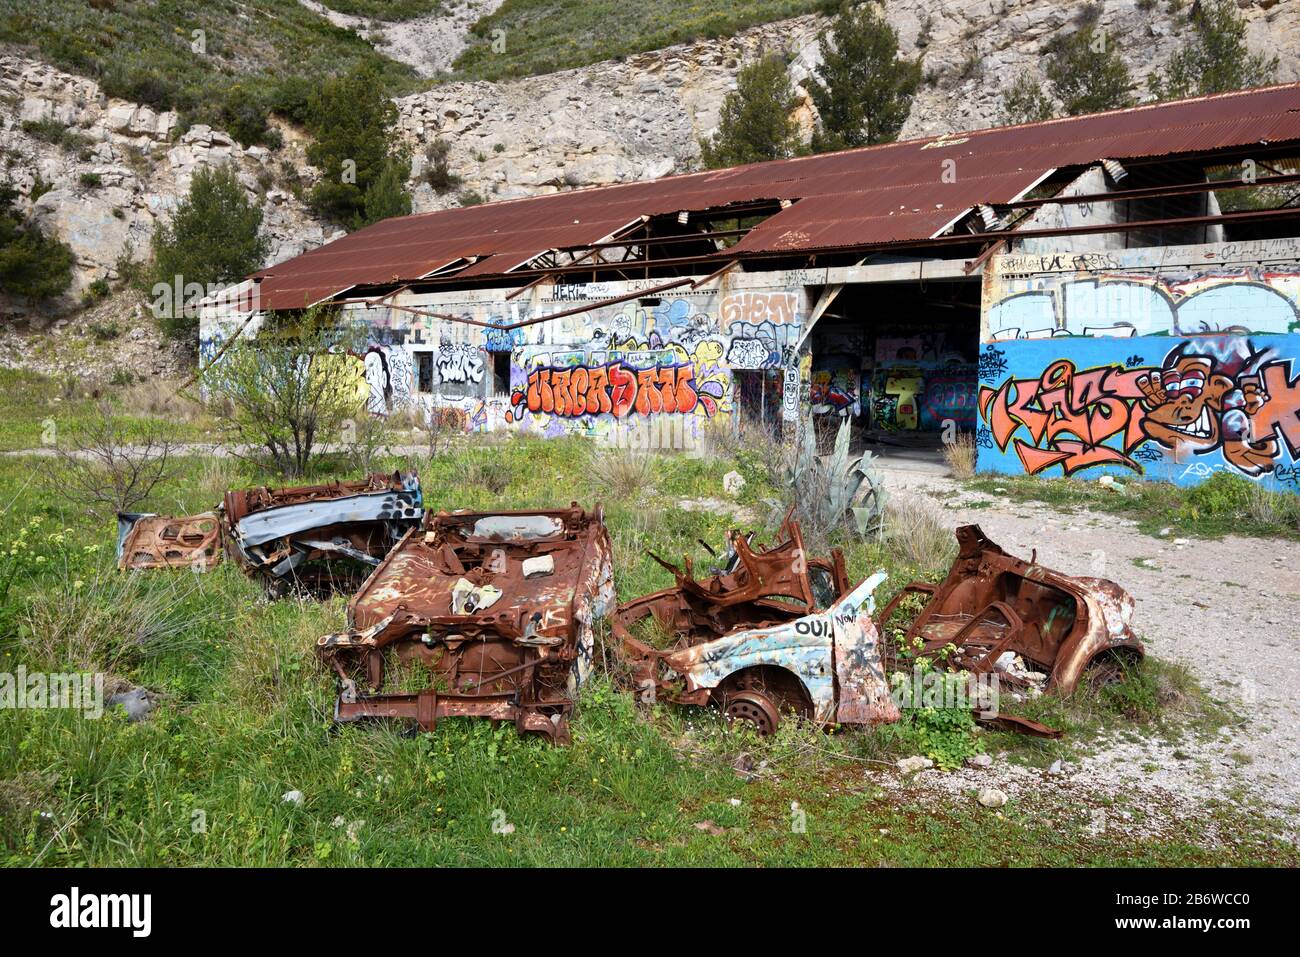 Verlassene Fabrik, Ruiniertes Industriegebäude & Rusty Wrecked Cars, ein Urbex-Standort, in Marseille Provence Frankreich Stockfoto